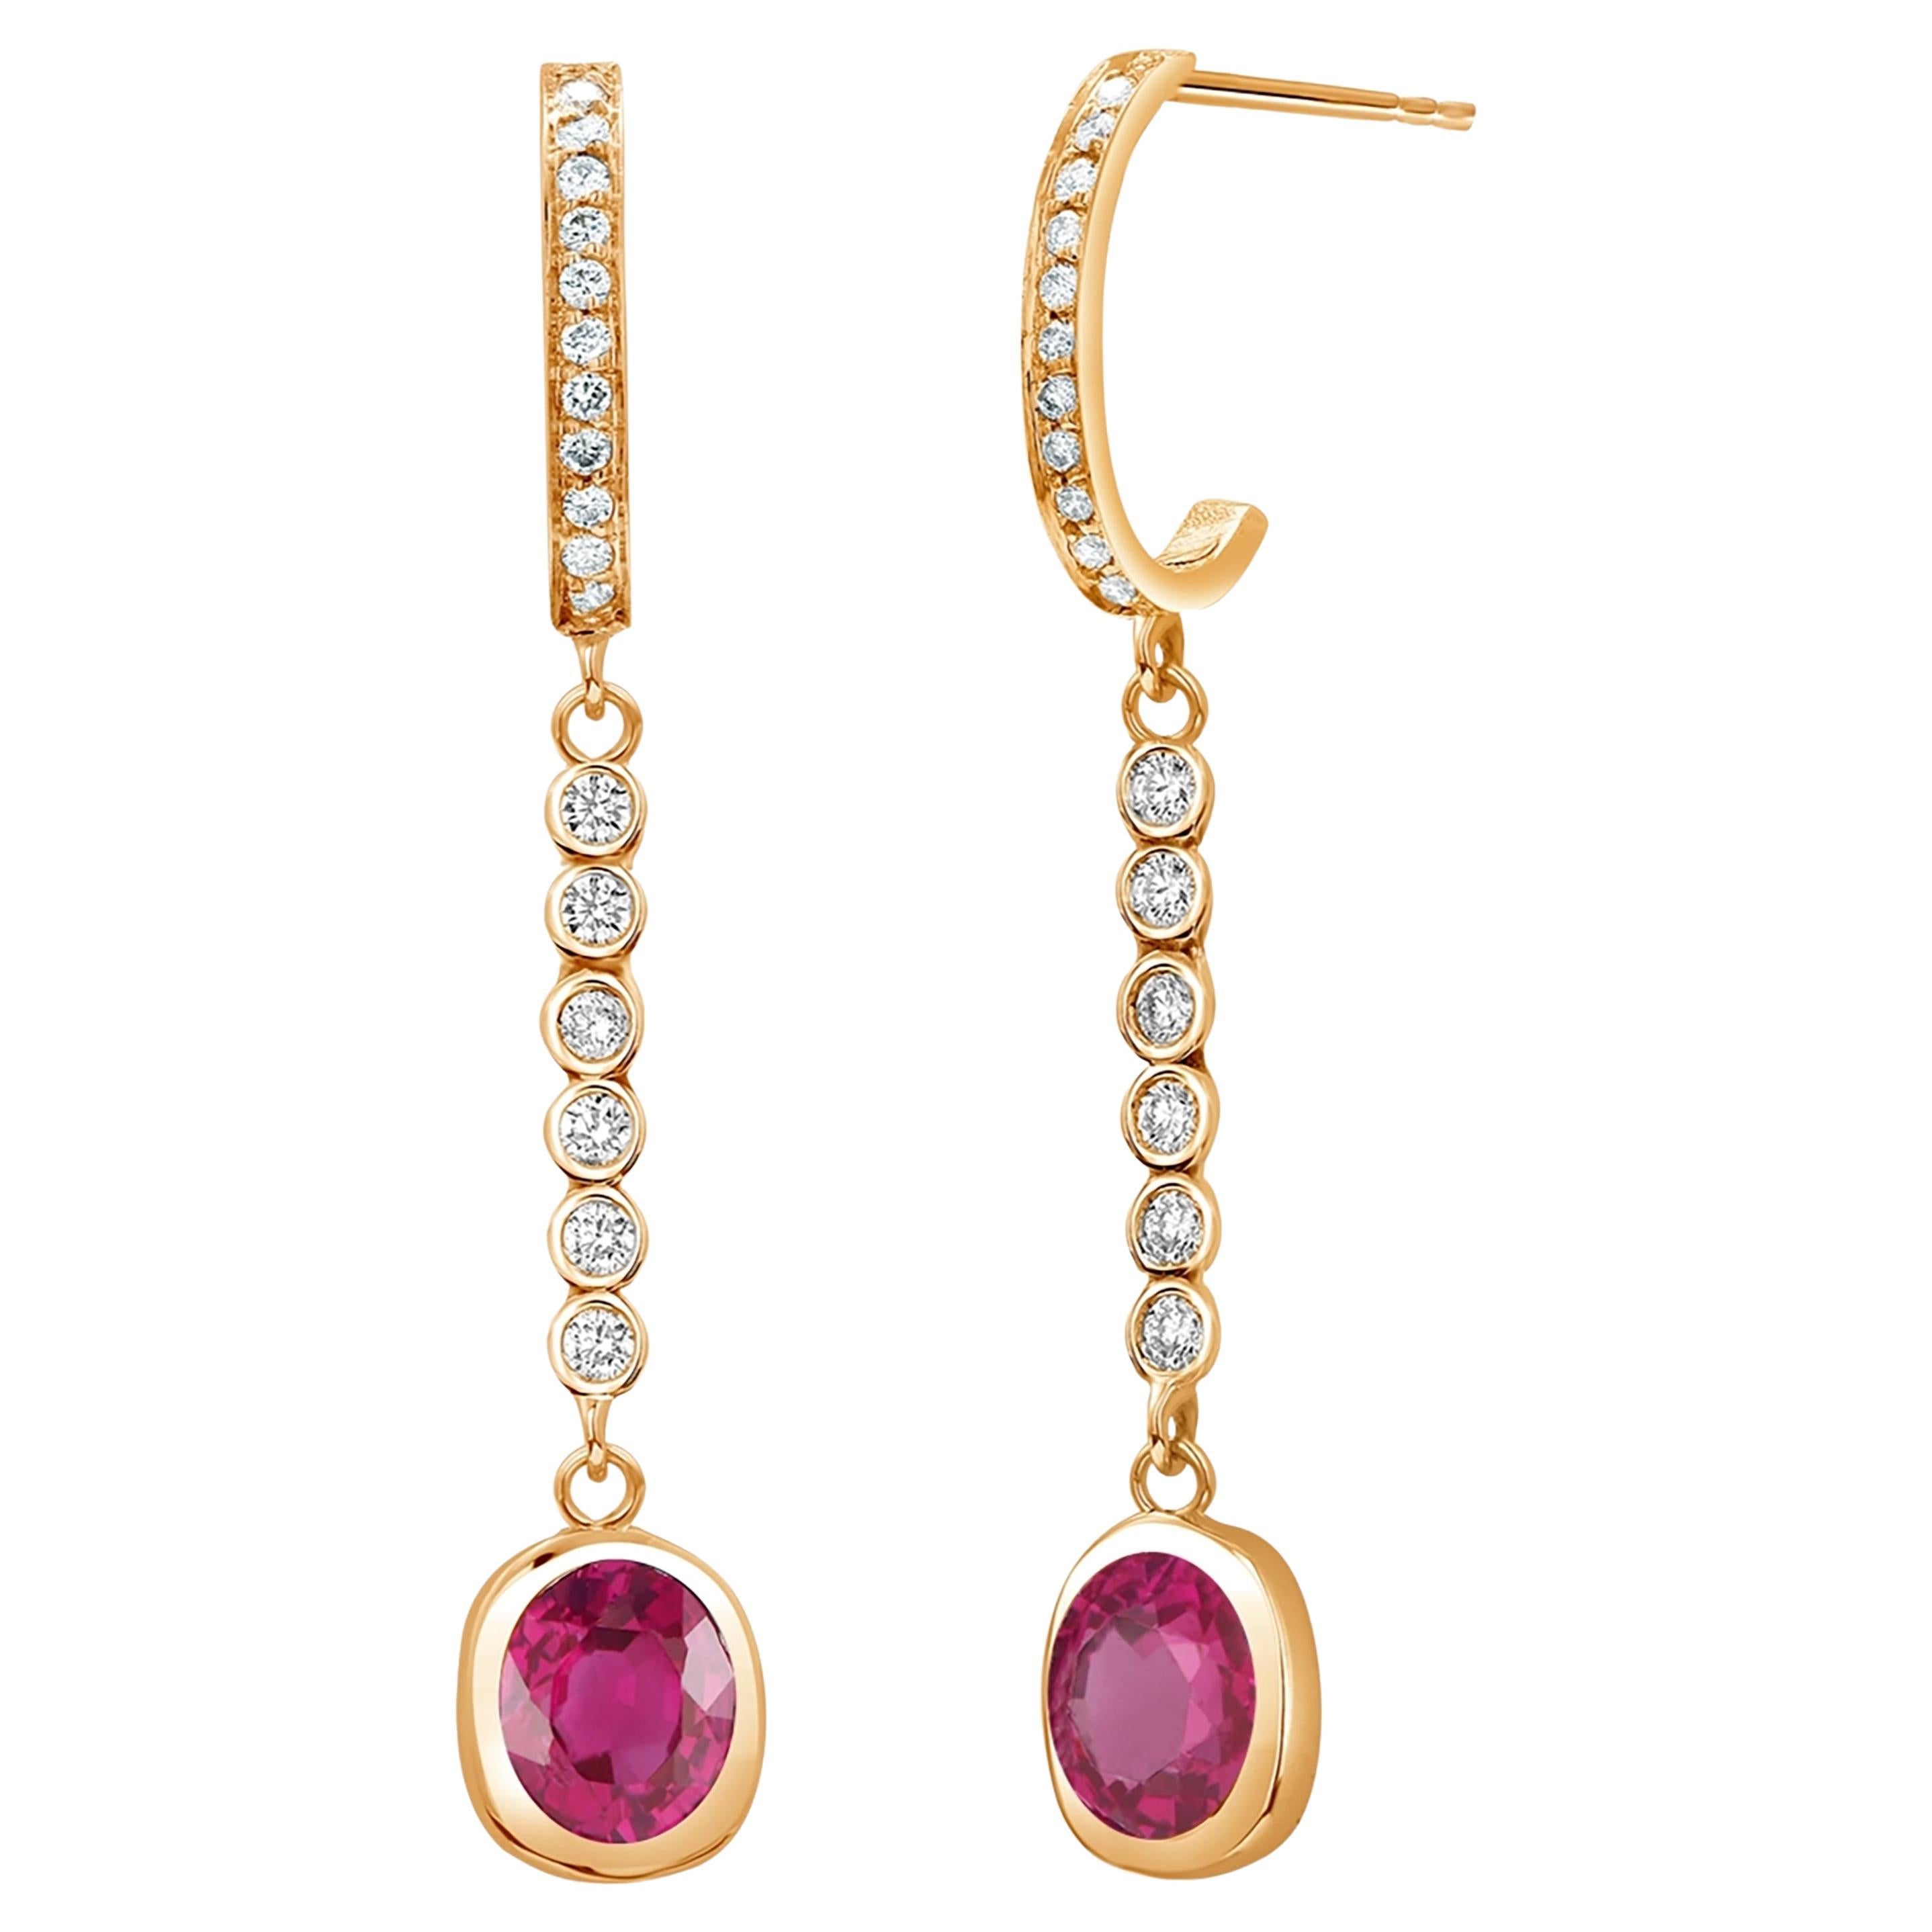 Bezel Set Burma Ruby Diamond 1.75 Carat 1.6 Inch Long Yellow Gold Earrings For Sale